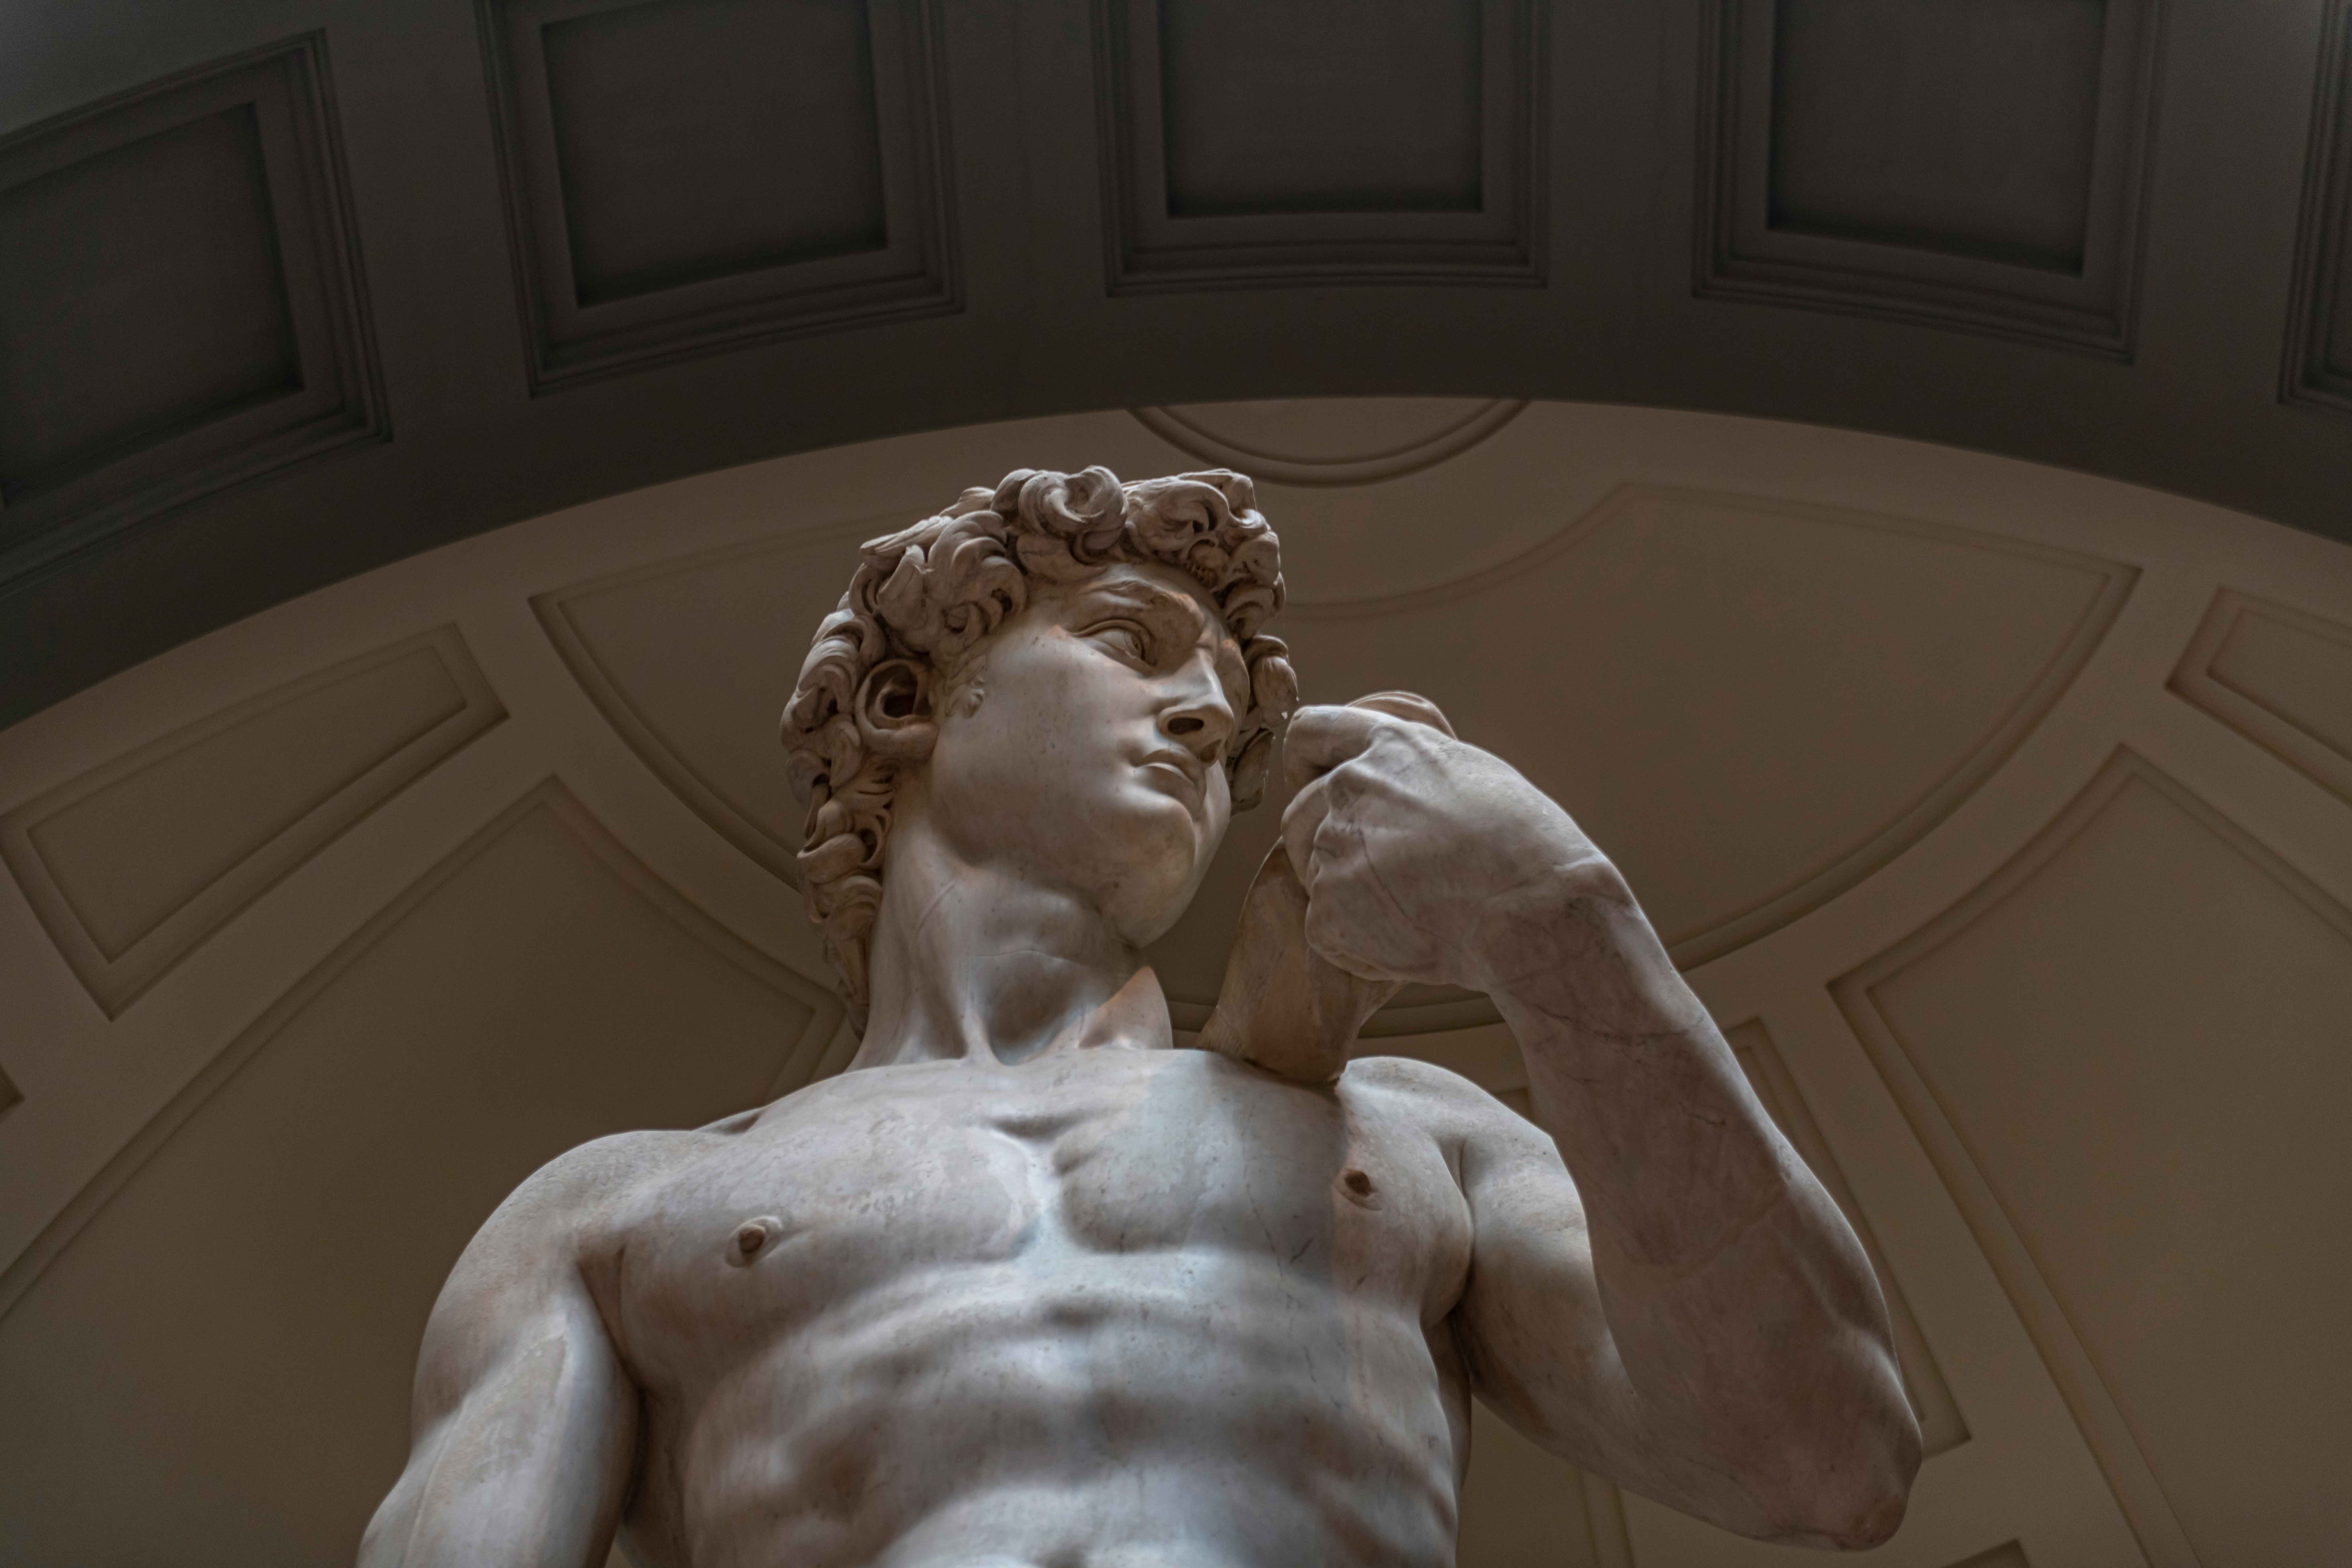 Galleria dell'Accademia di-Firenze . Photo Credit: @guidocozzi